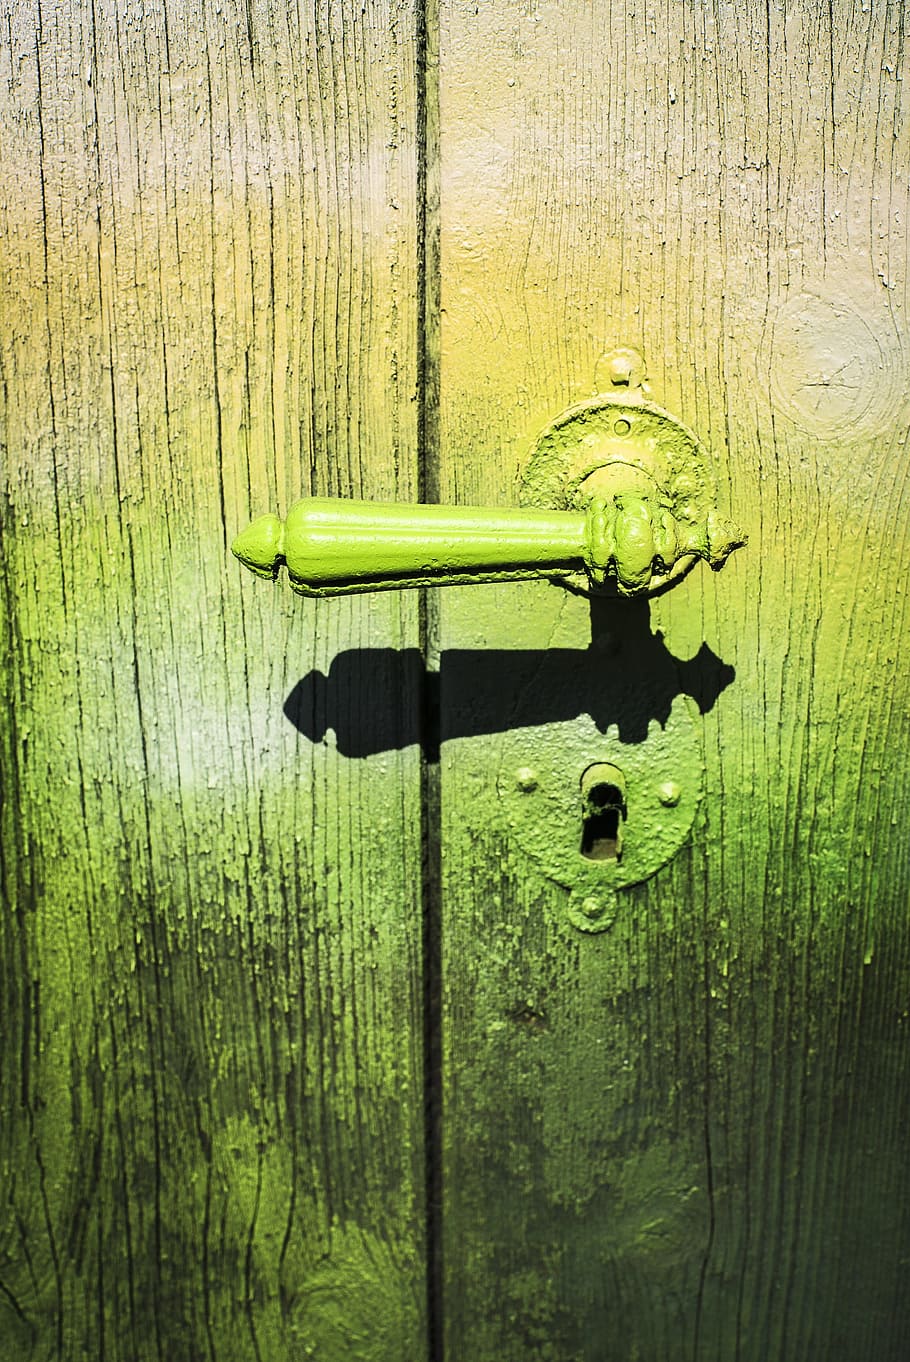 door handle, old, graffiti, old door, wood, door lock, door knob, handle, house entrance, antique